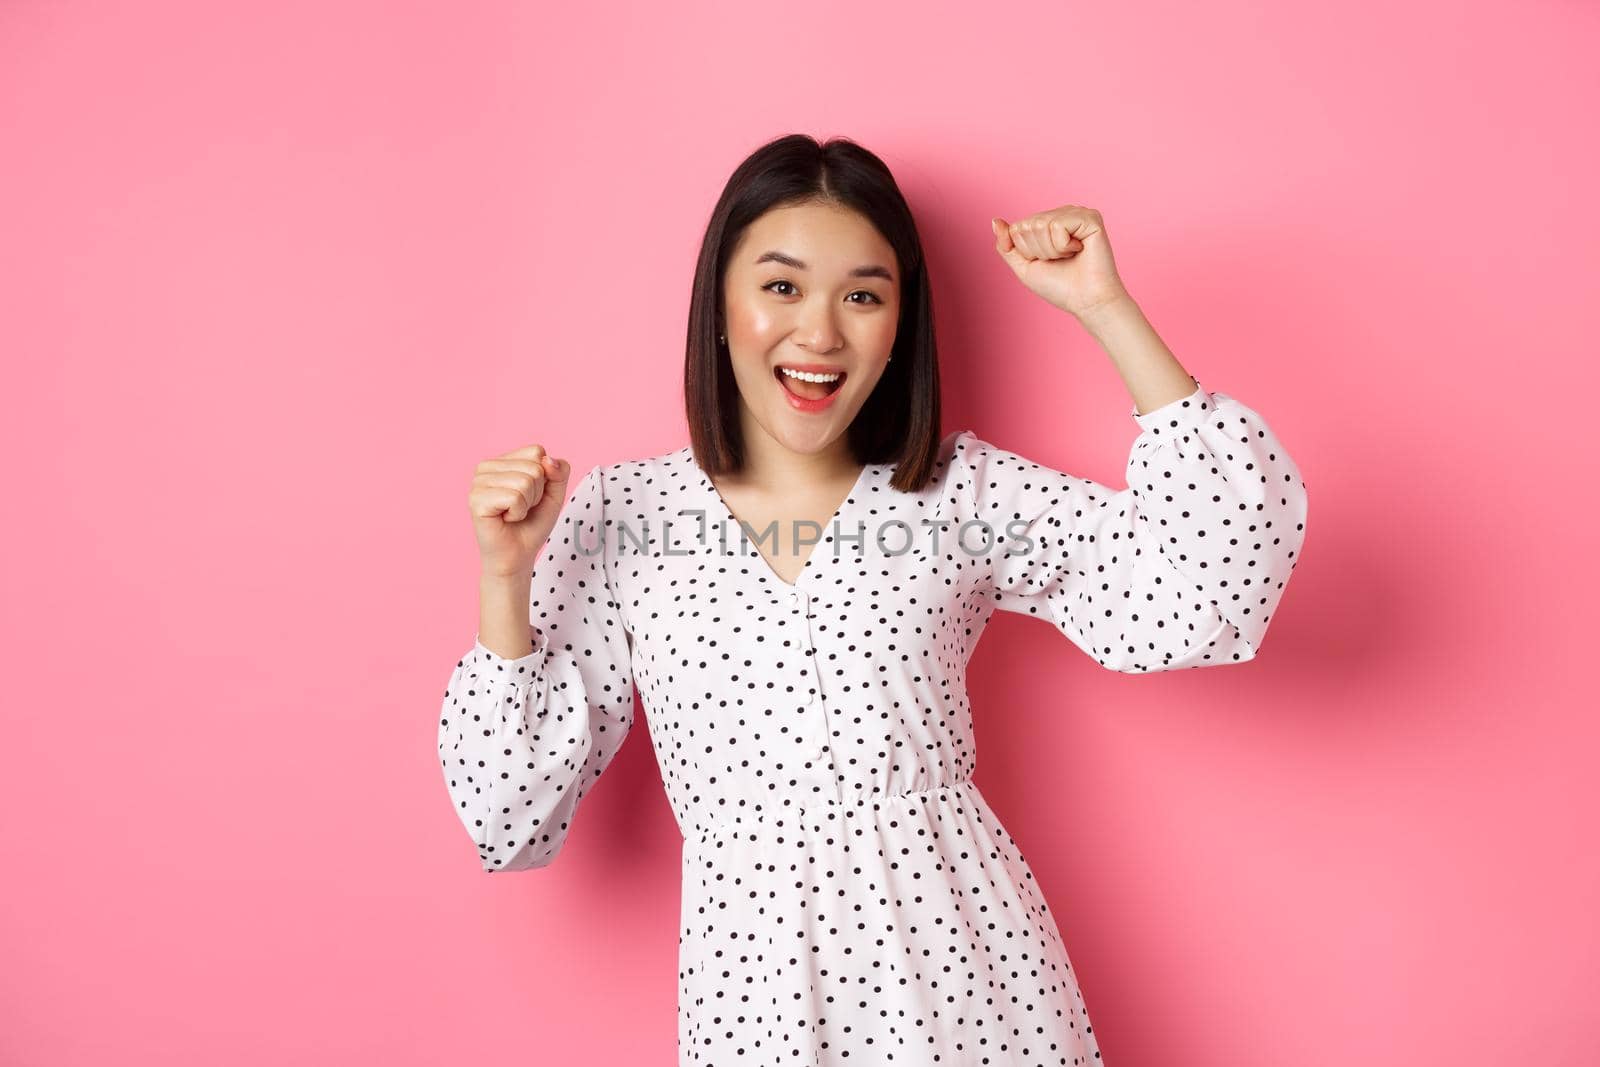 Beautiful korean woman dancing and having fun, smiling happy at camera, posing against pink background.